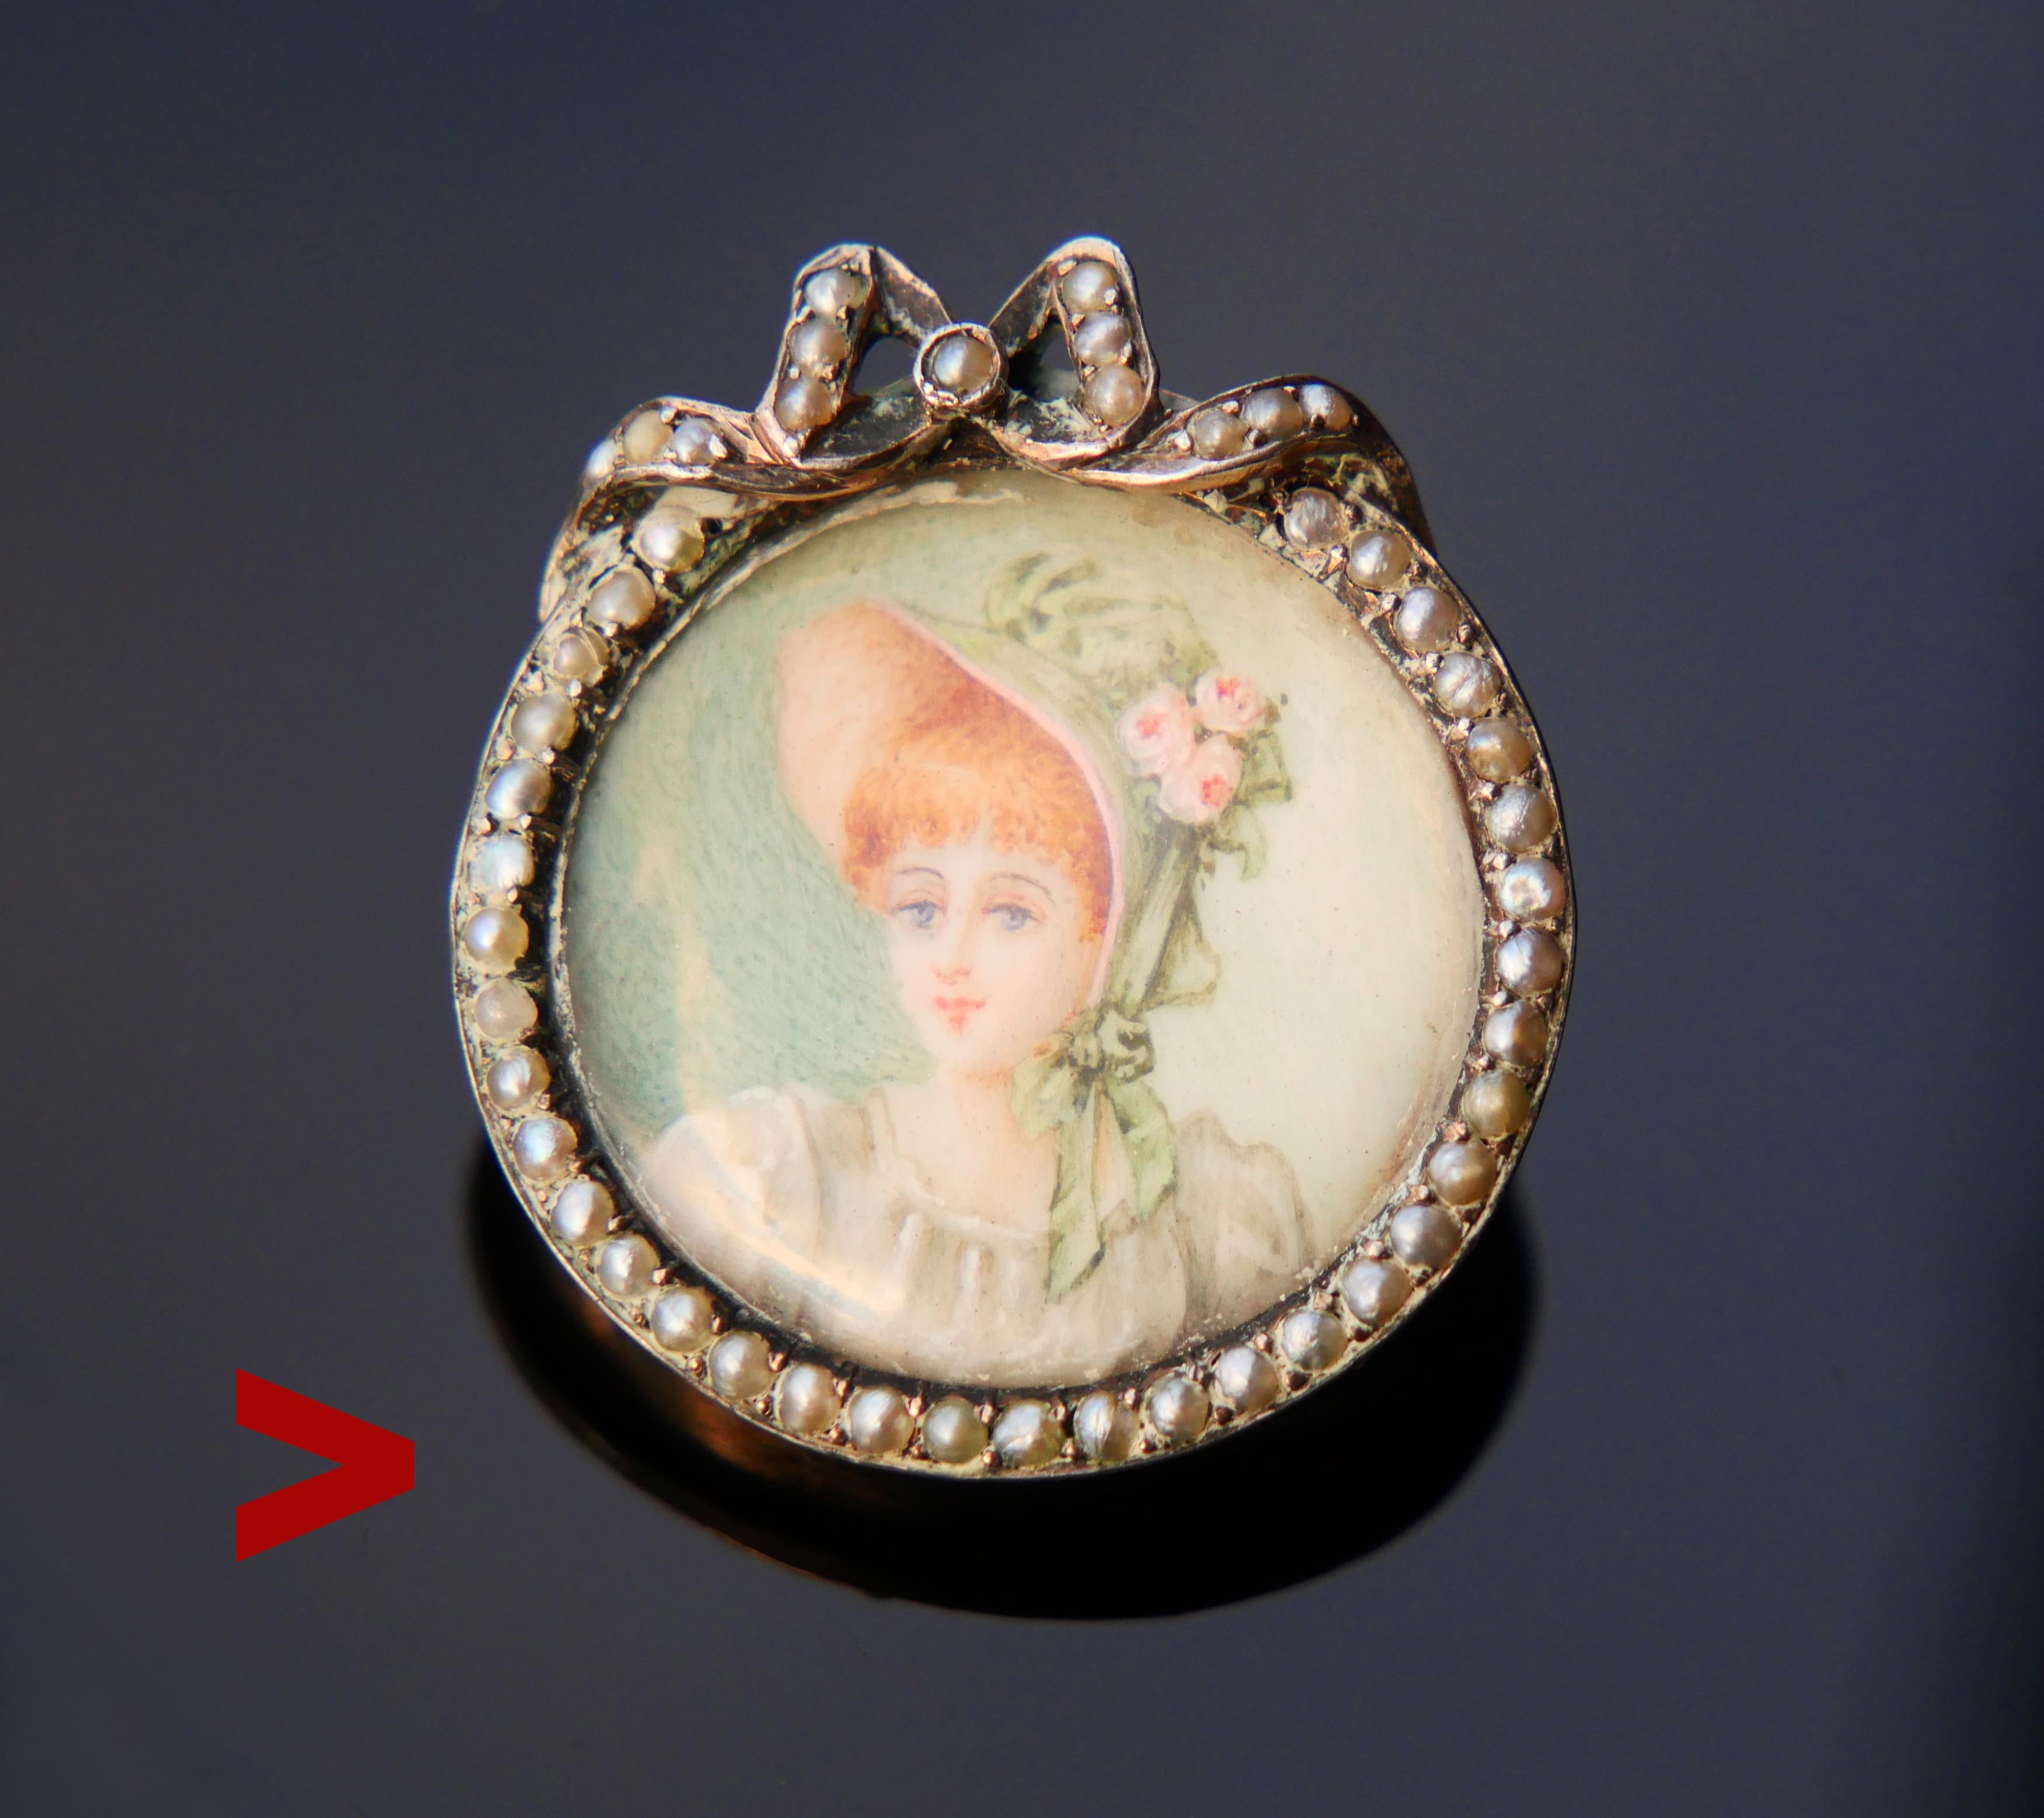 Vieux pendentif/broche européen datant de la fin du 19e siècle avec un portrait miniature d'une fille peint à la main sous verre convexe. L'origine exacte est inconnue, probablement une création allemande.

Toutes les pièces métalliques sont en